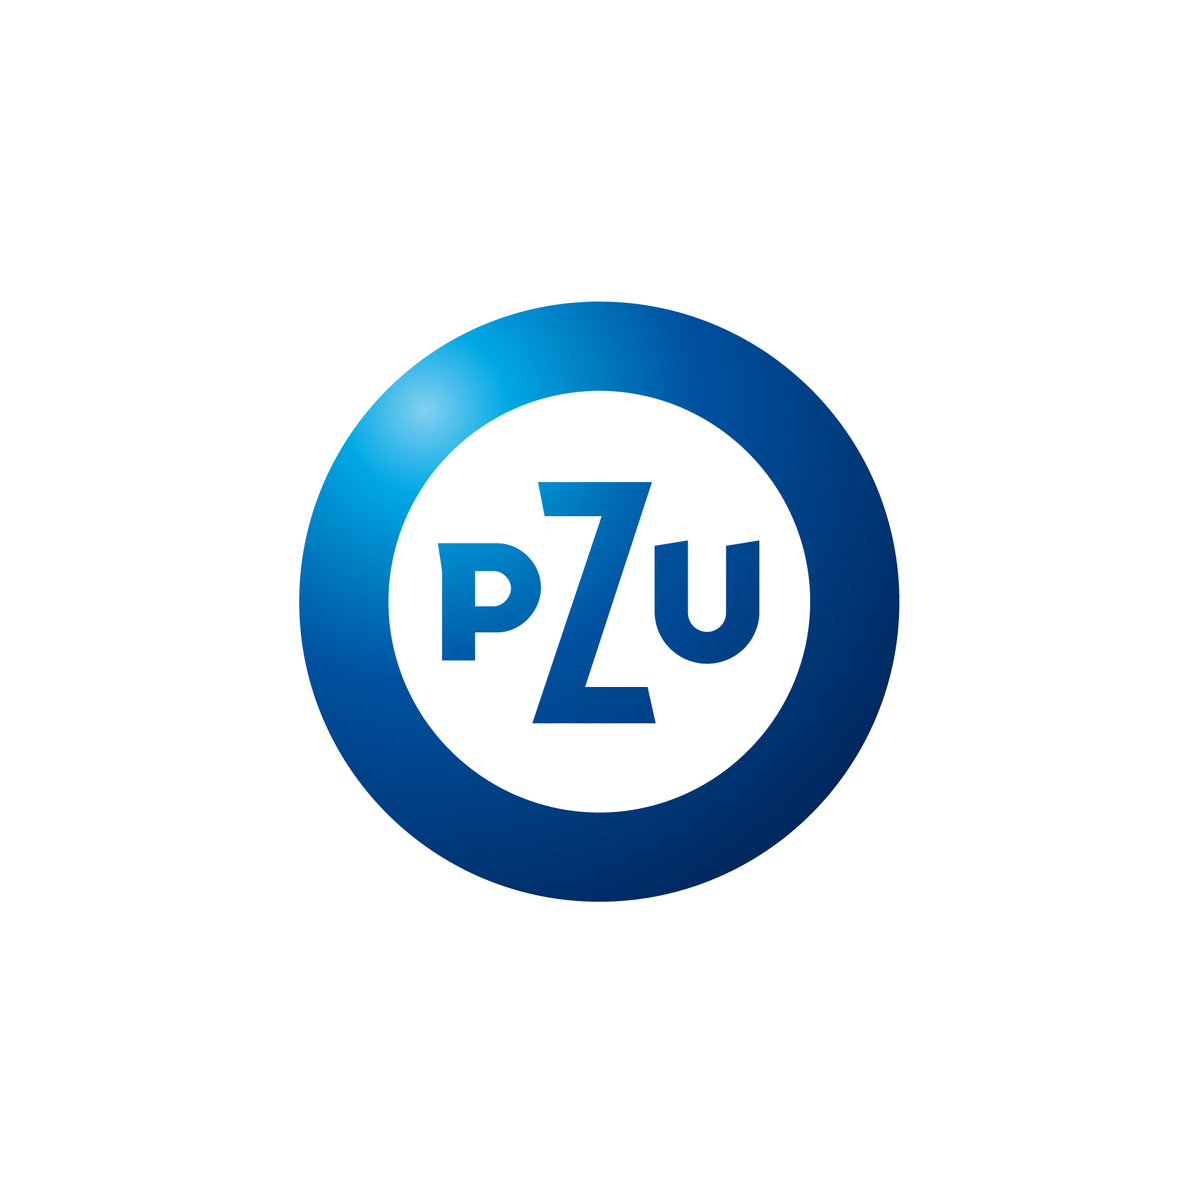 pzu_logo_rgb.jpg